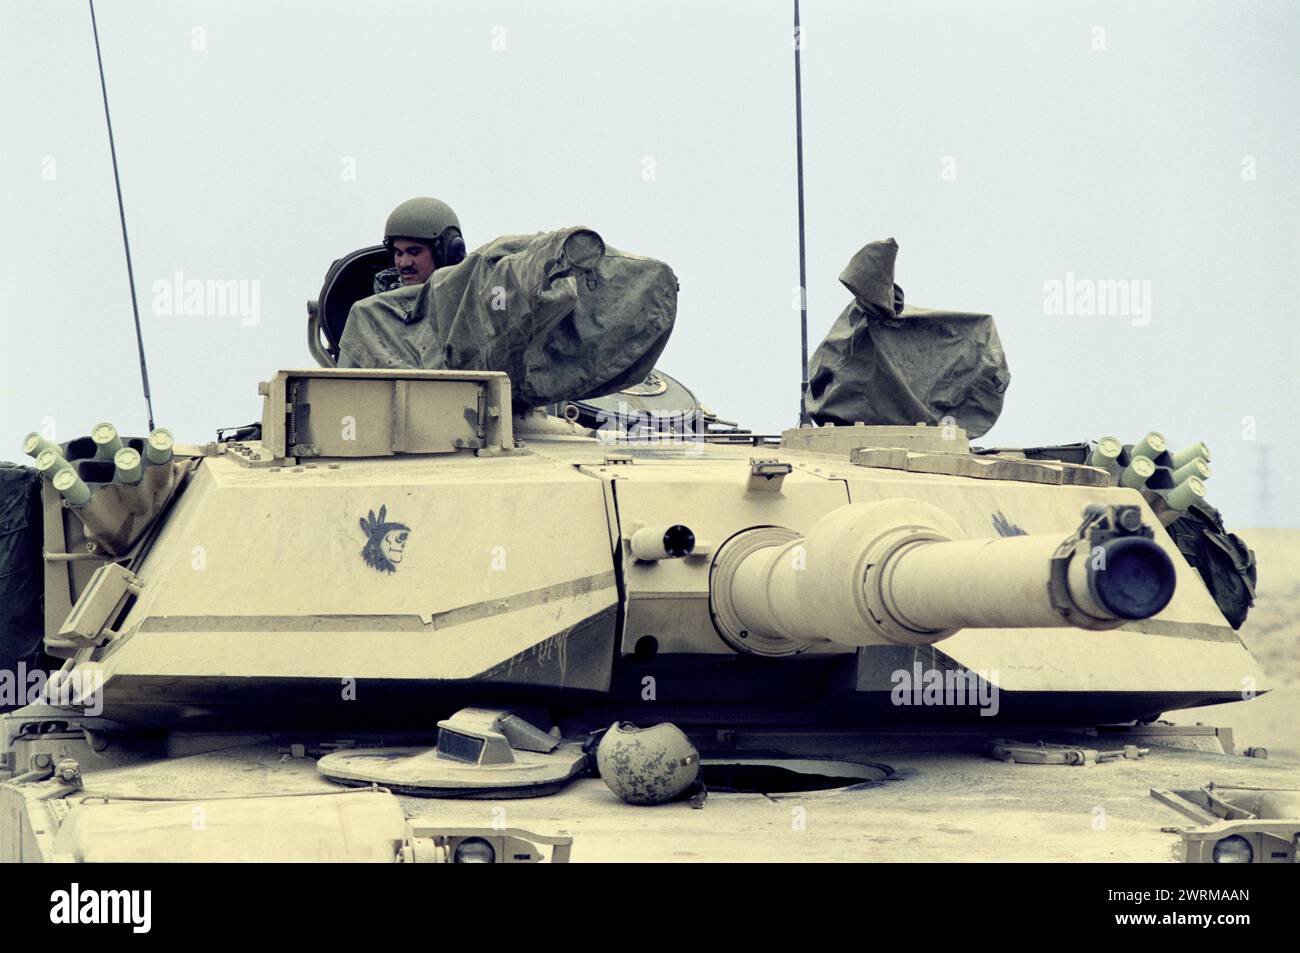 23 mars 1991 un soldat de l'armée américaine dans son réservoir de M1Abrams, stationné dans le désert dans le nord du Koweït. Banque D'Images